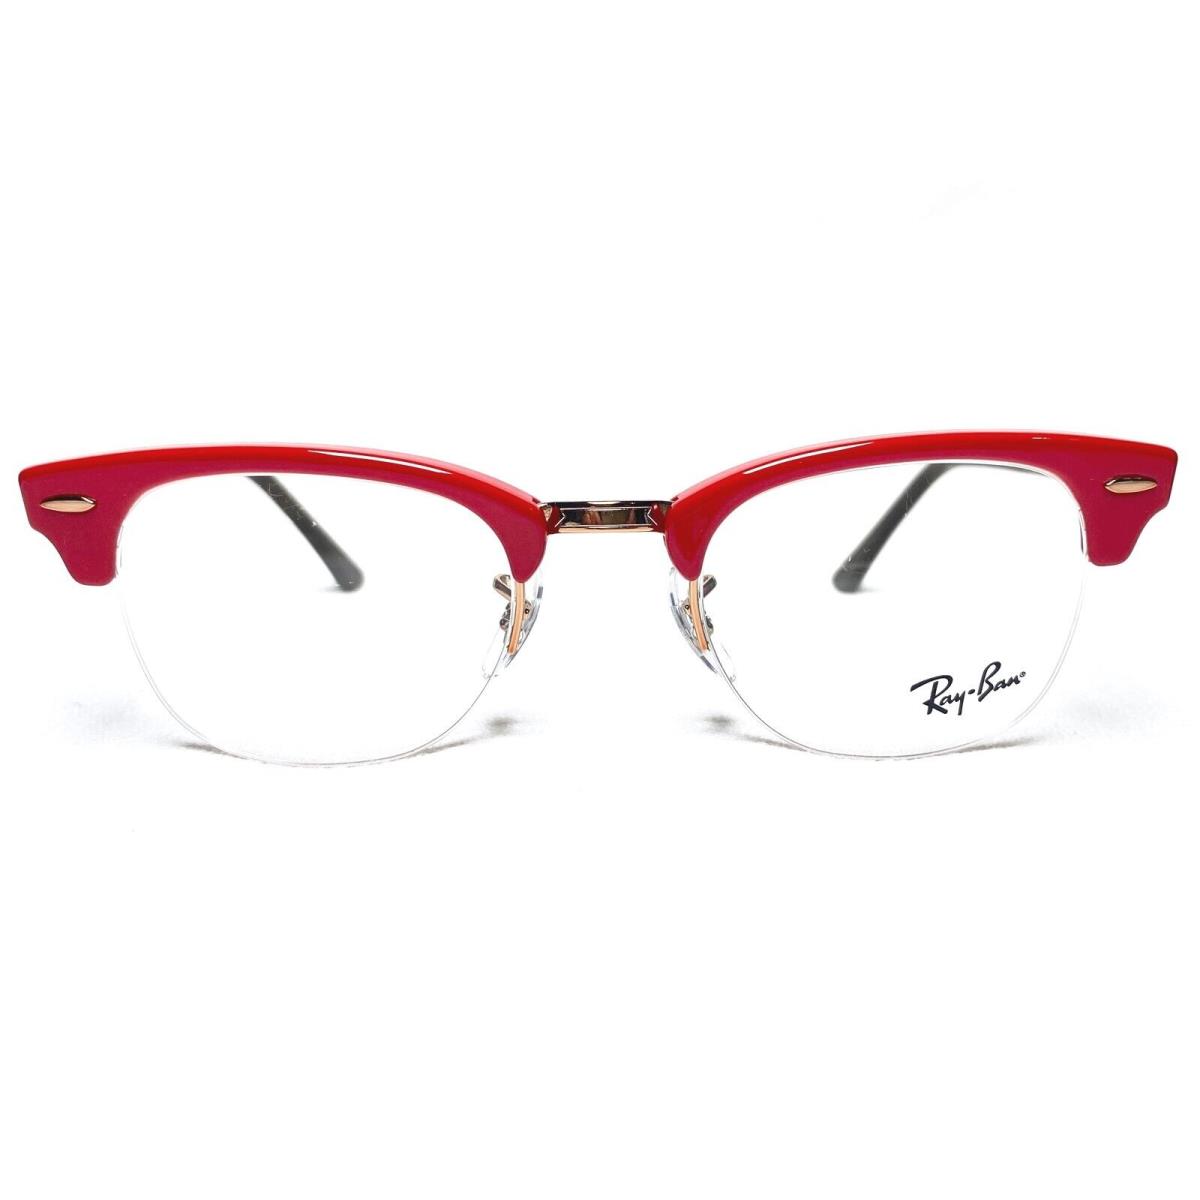 Ray Ban Clubmaster RB4354V 5904 Unisex Red Half Rim Eyeglasses Frames 49/22 - Red, Frame: Red, Manufacturer: